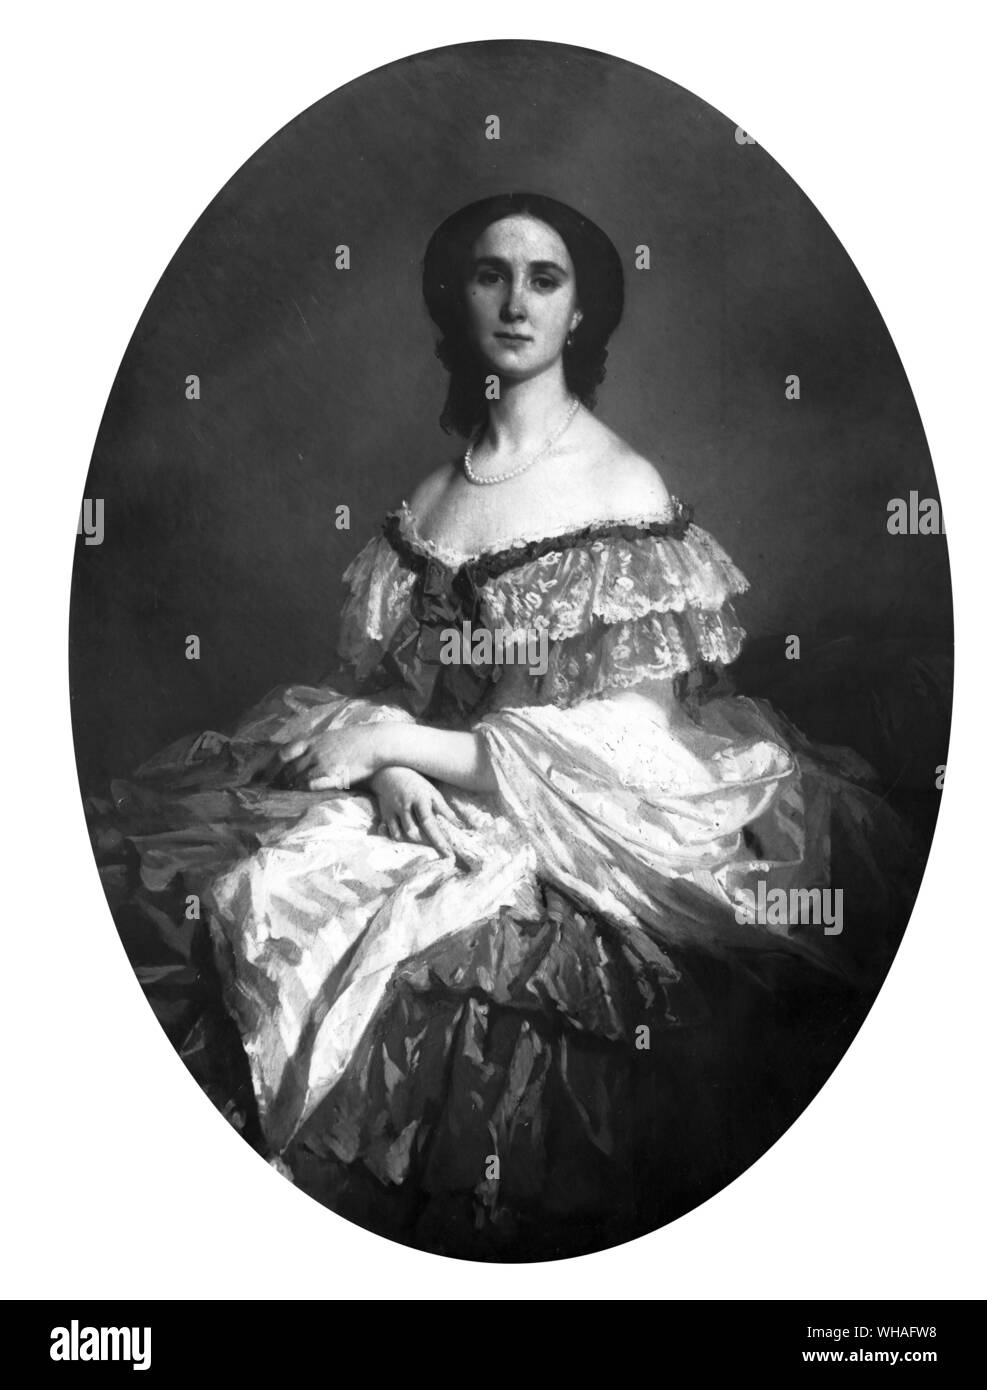 Die Kaiserin Charlotte von Mexiko in der Frau 1857 von Erzherzog Albert von Österreich, Kaiser von Mexiko gefördert wurde von Napoleon III. Der Erzherzog wurde schließlich in Mexiko und Charlotte starb wahnsinnig.. Porträt von Isidore Pils. Stockfoto